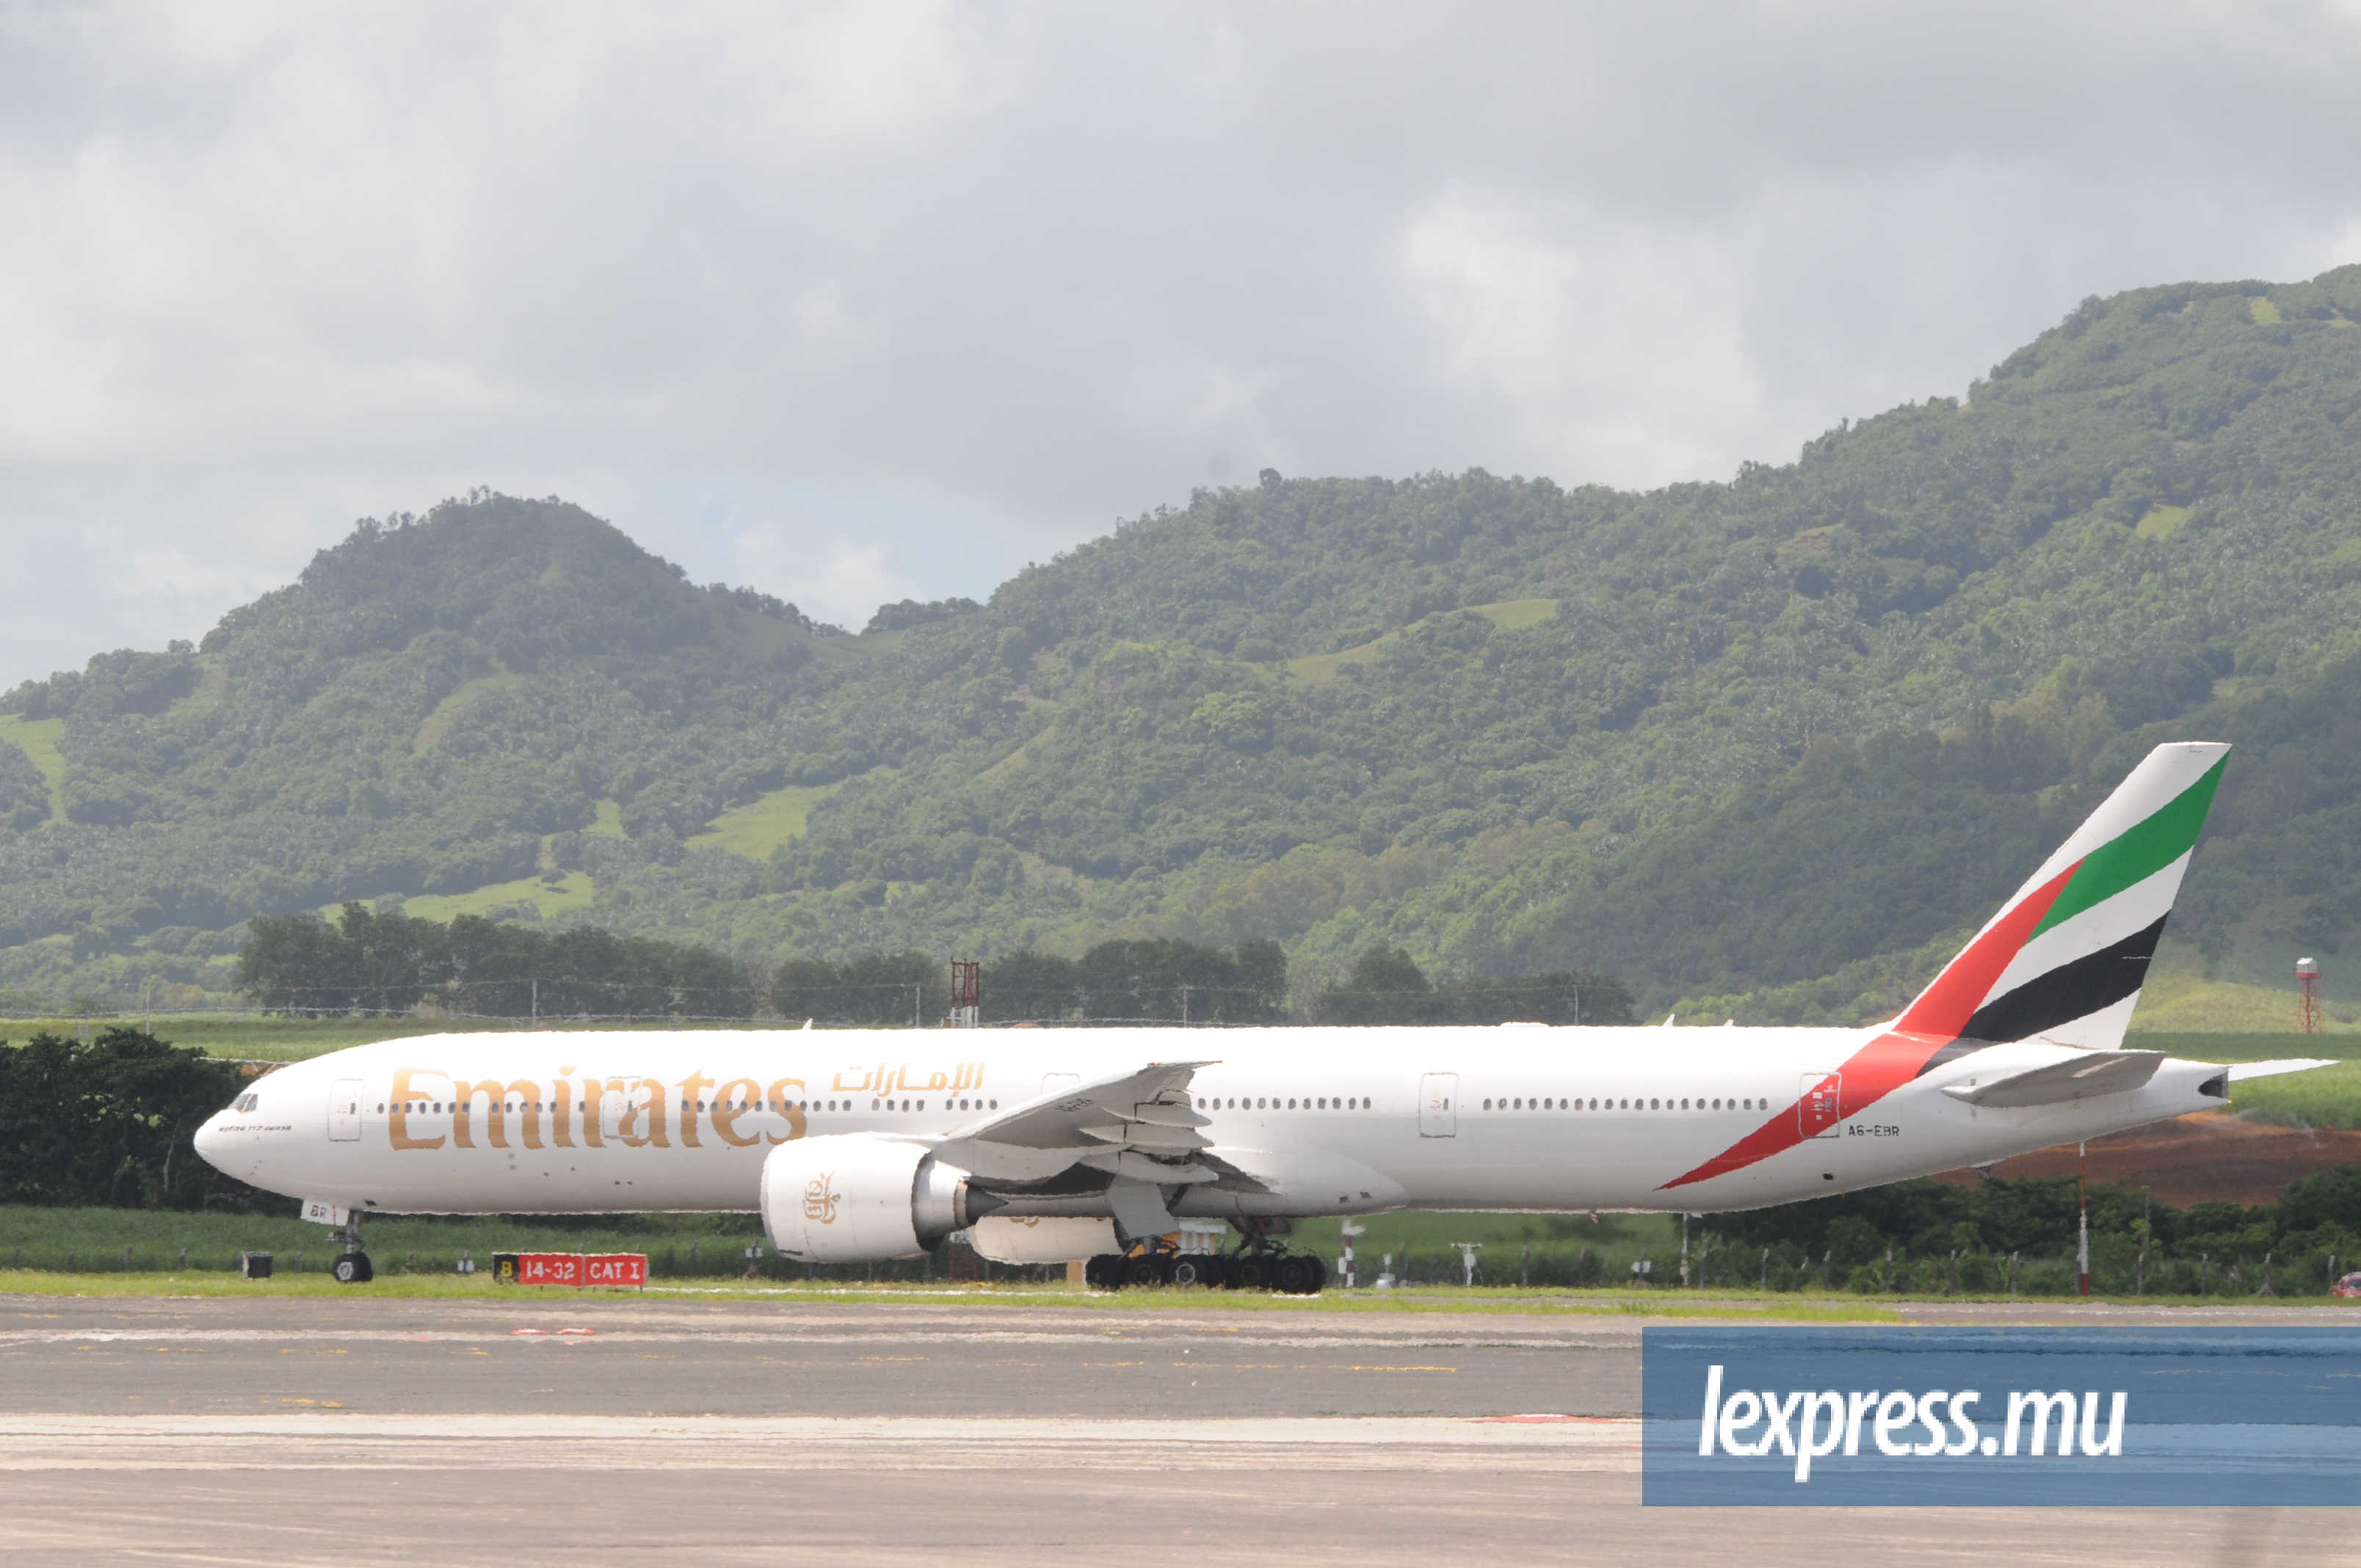 Emirates: plus de 3,9 millions de passagers depuis 2002